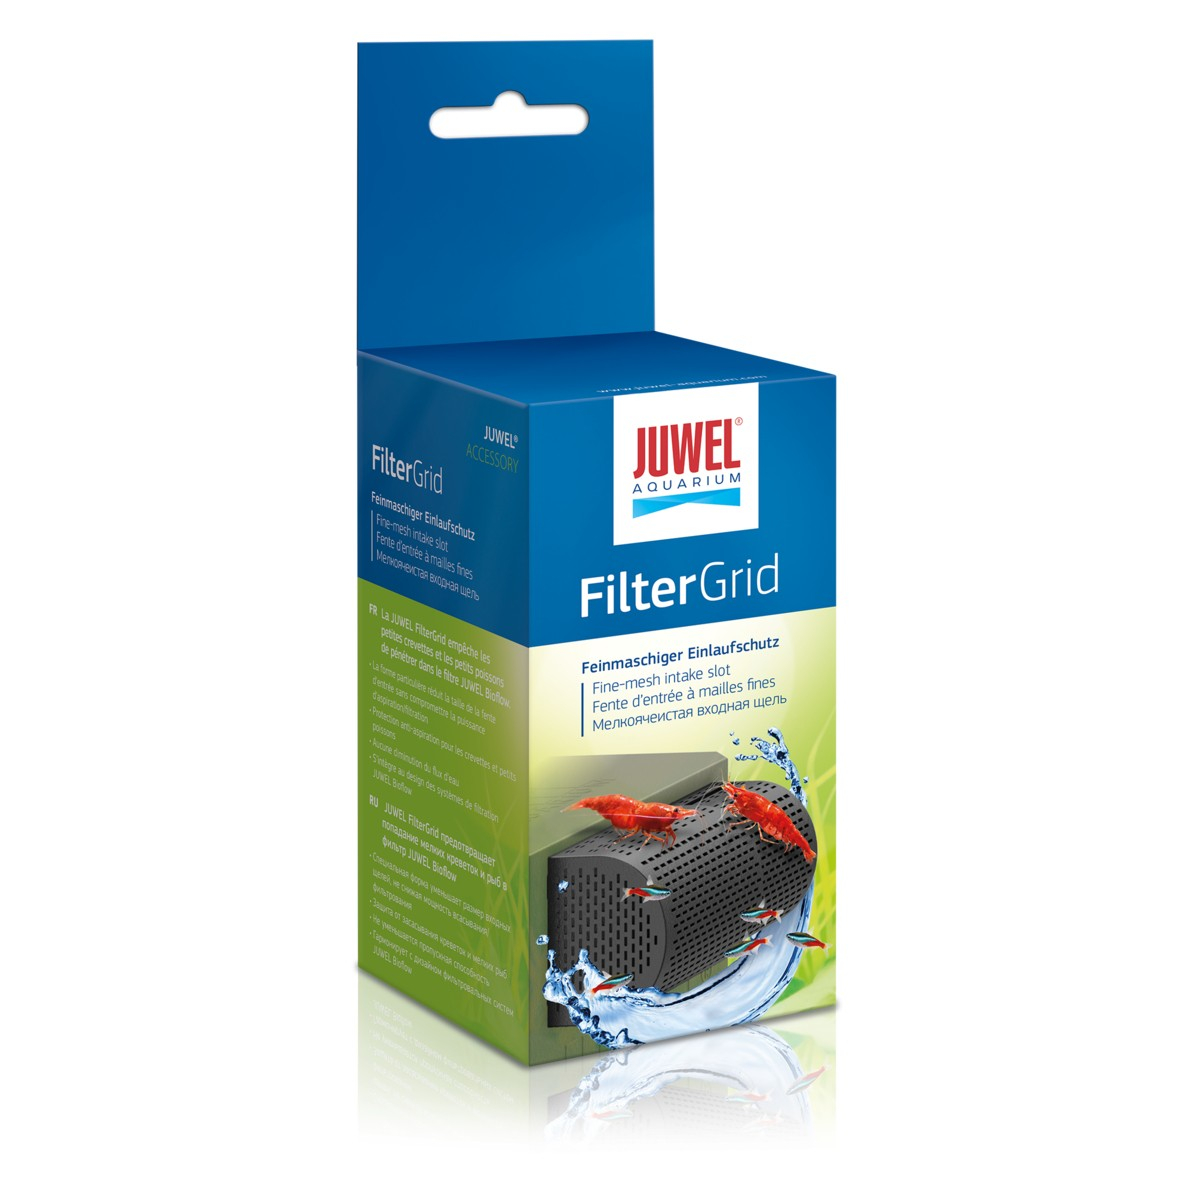 FilterGrid Schutz für Wirbellose Juwel